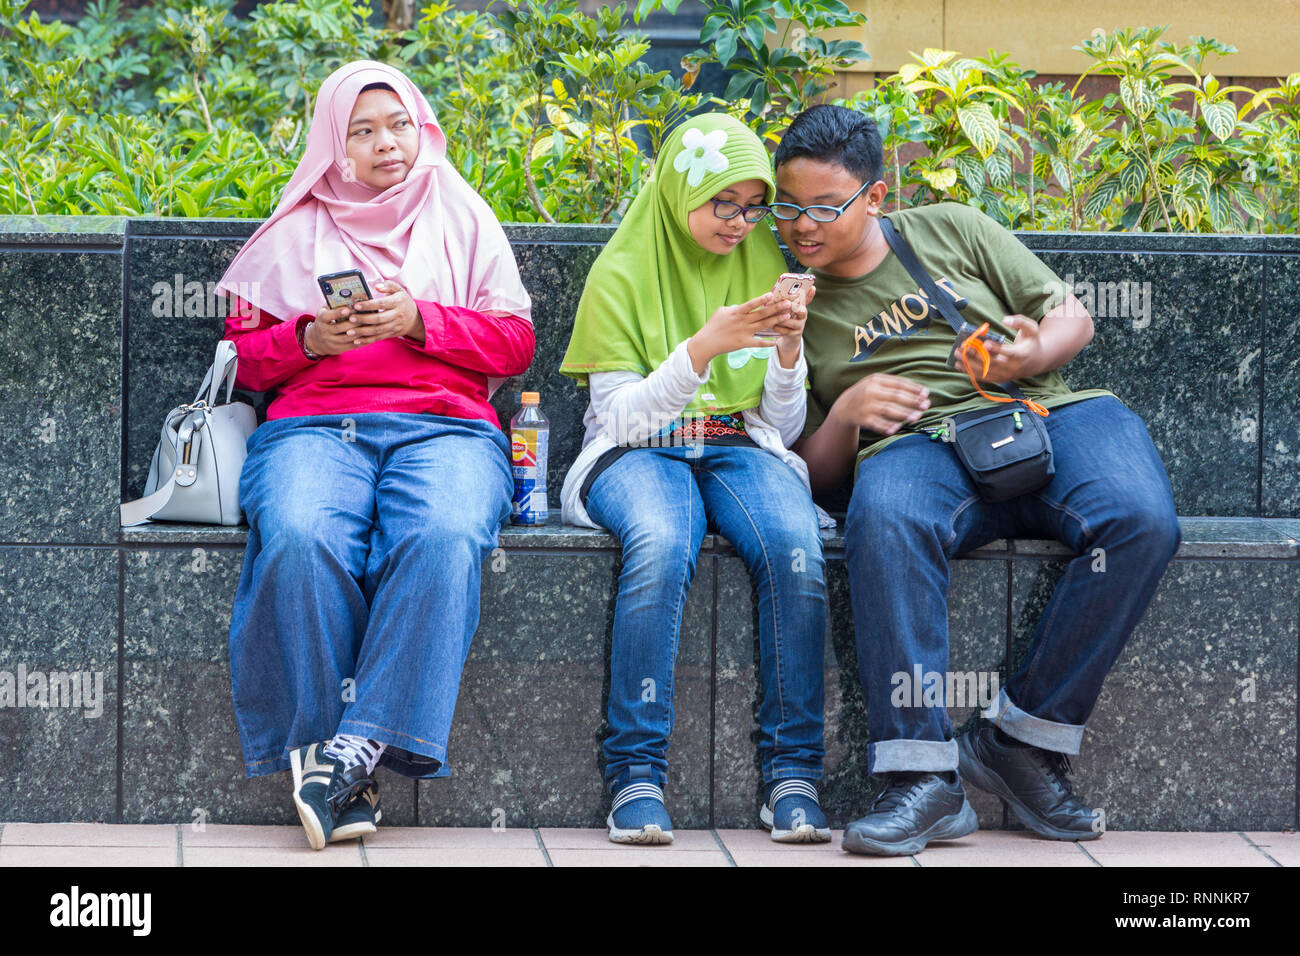 Di Singapore, Orchard Road Street scene. I giovani abitanti di Singapore con i loro telefoni cellulari. Foto Stock